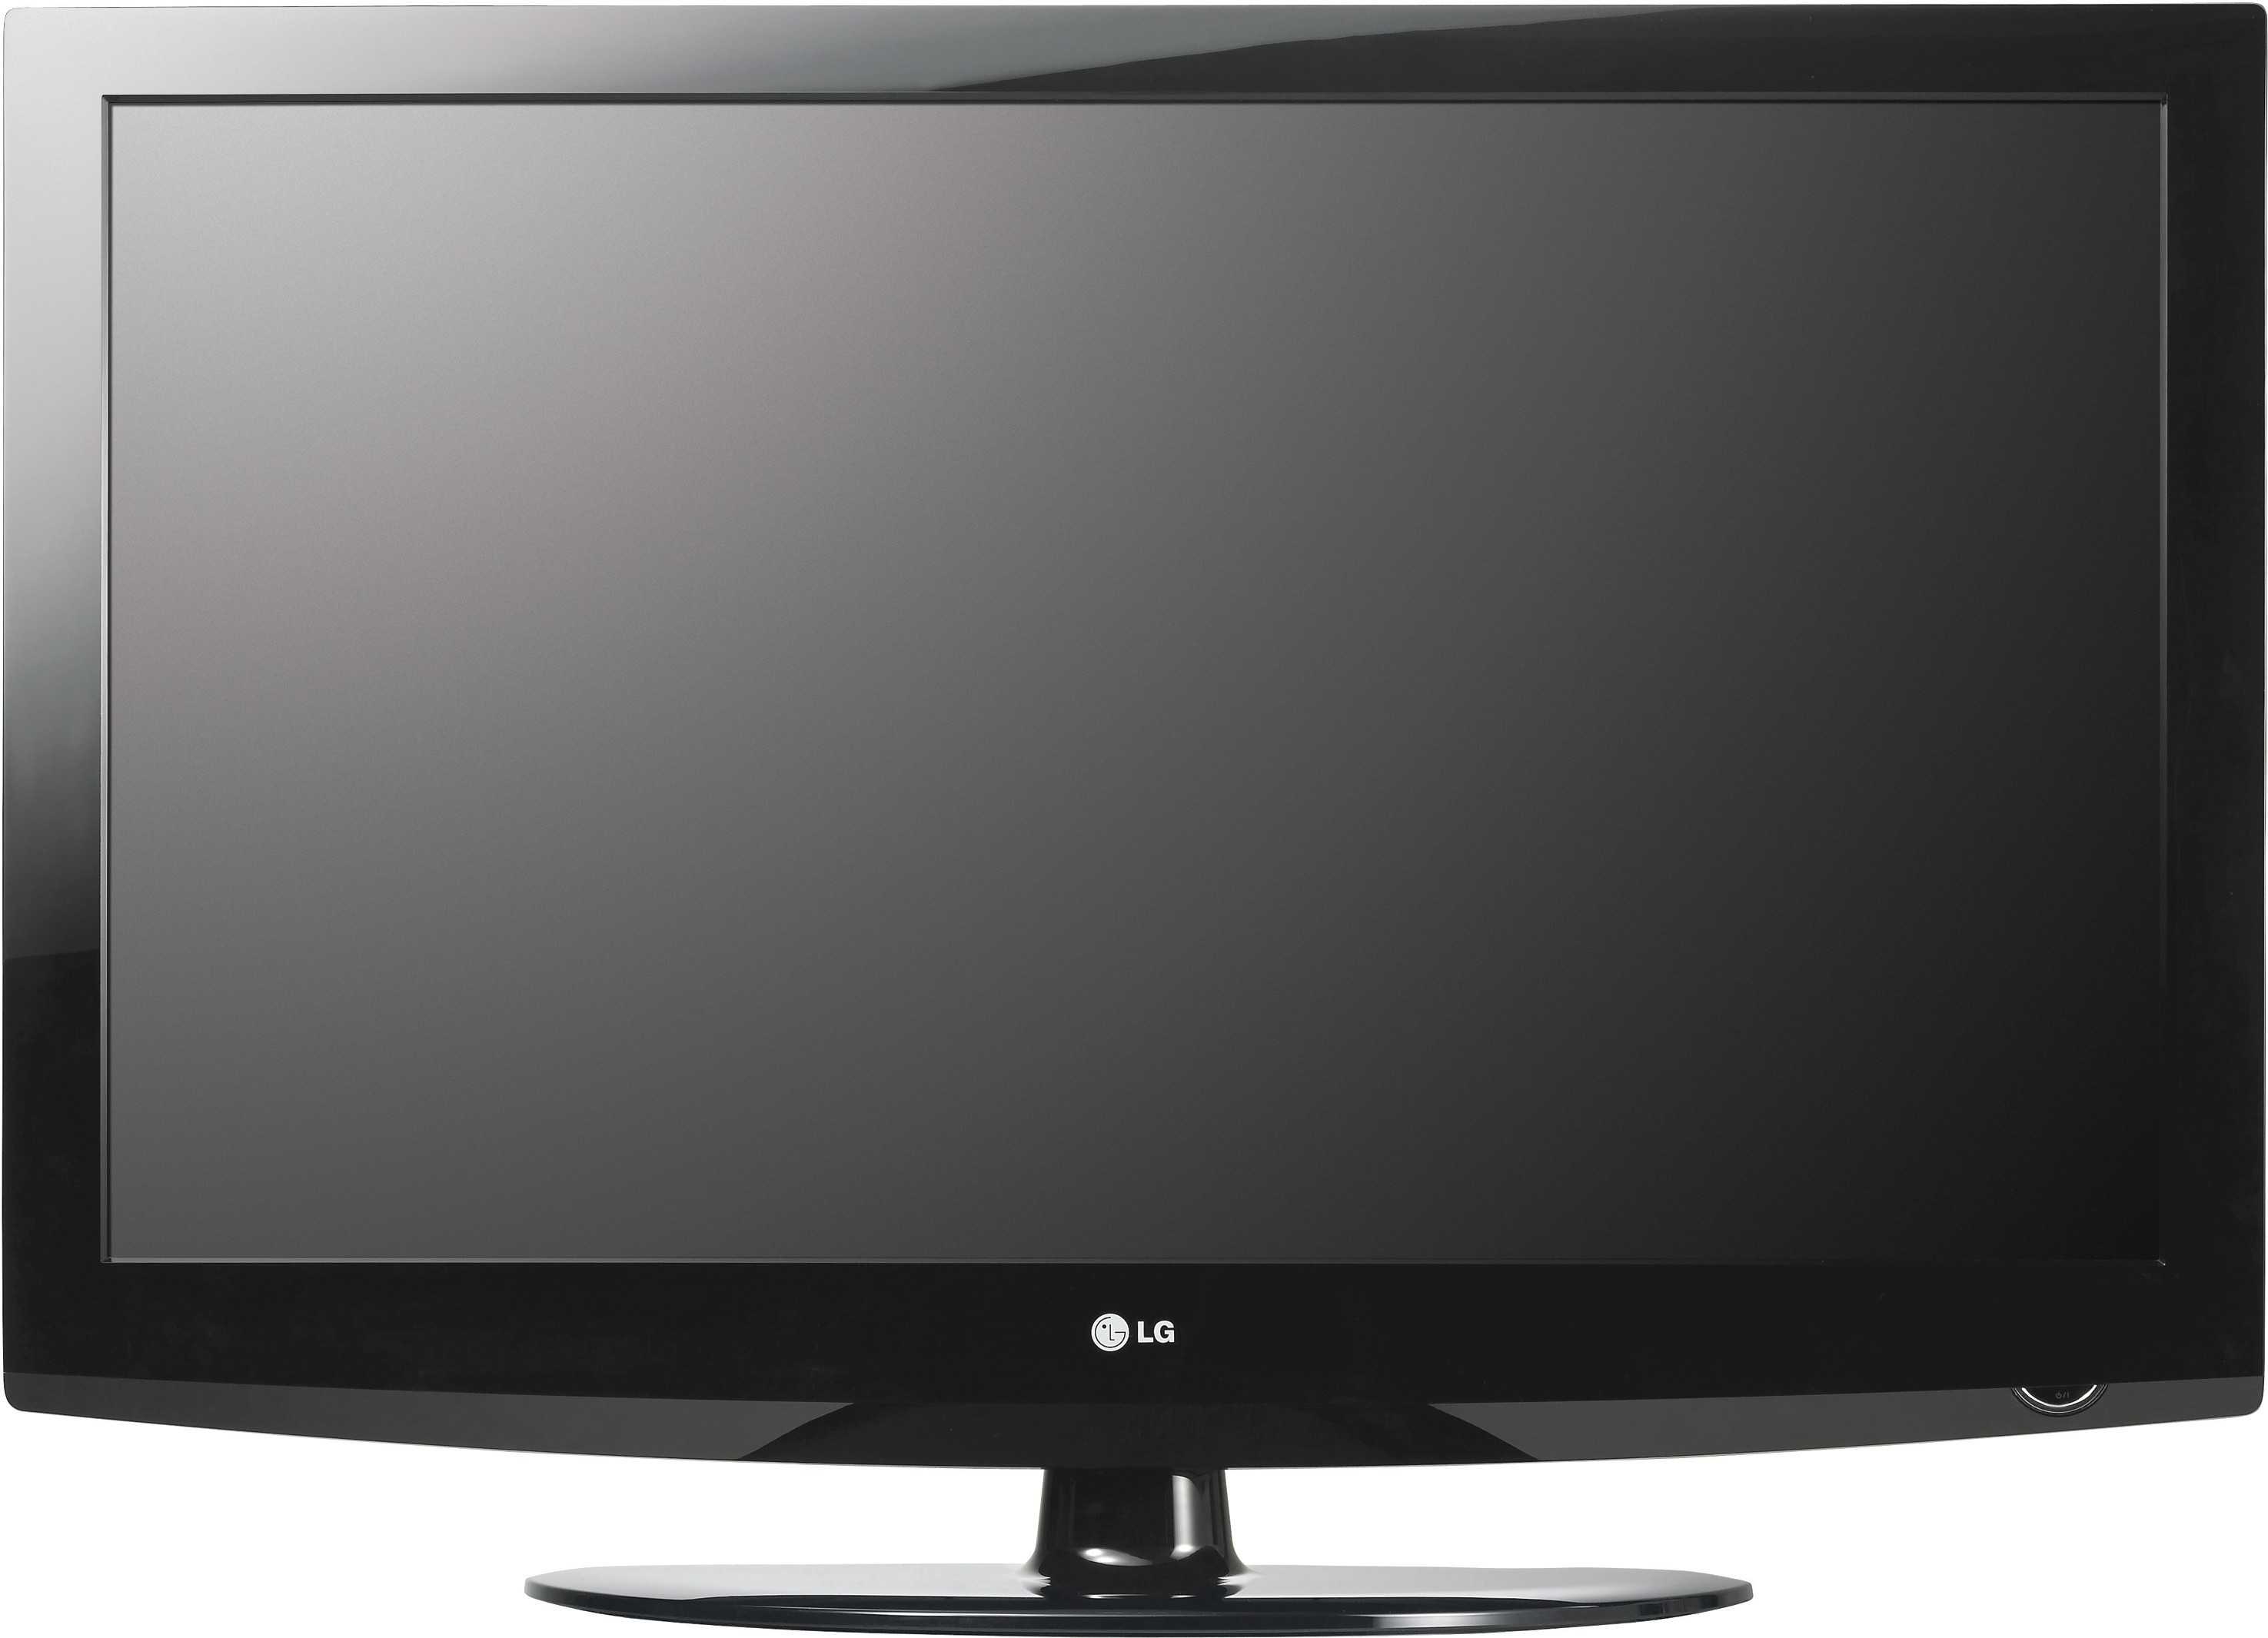 Телевизор LG 37LV375S - подробные характеристики обзоры видео фото Цены в интернет-магазинах где можно купить телевизор LG 37LV375S